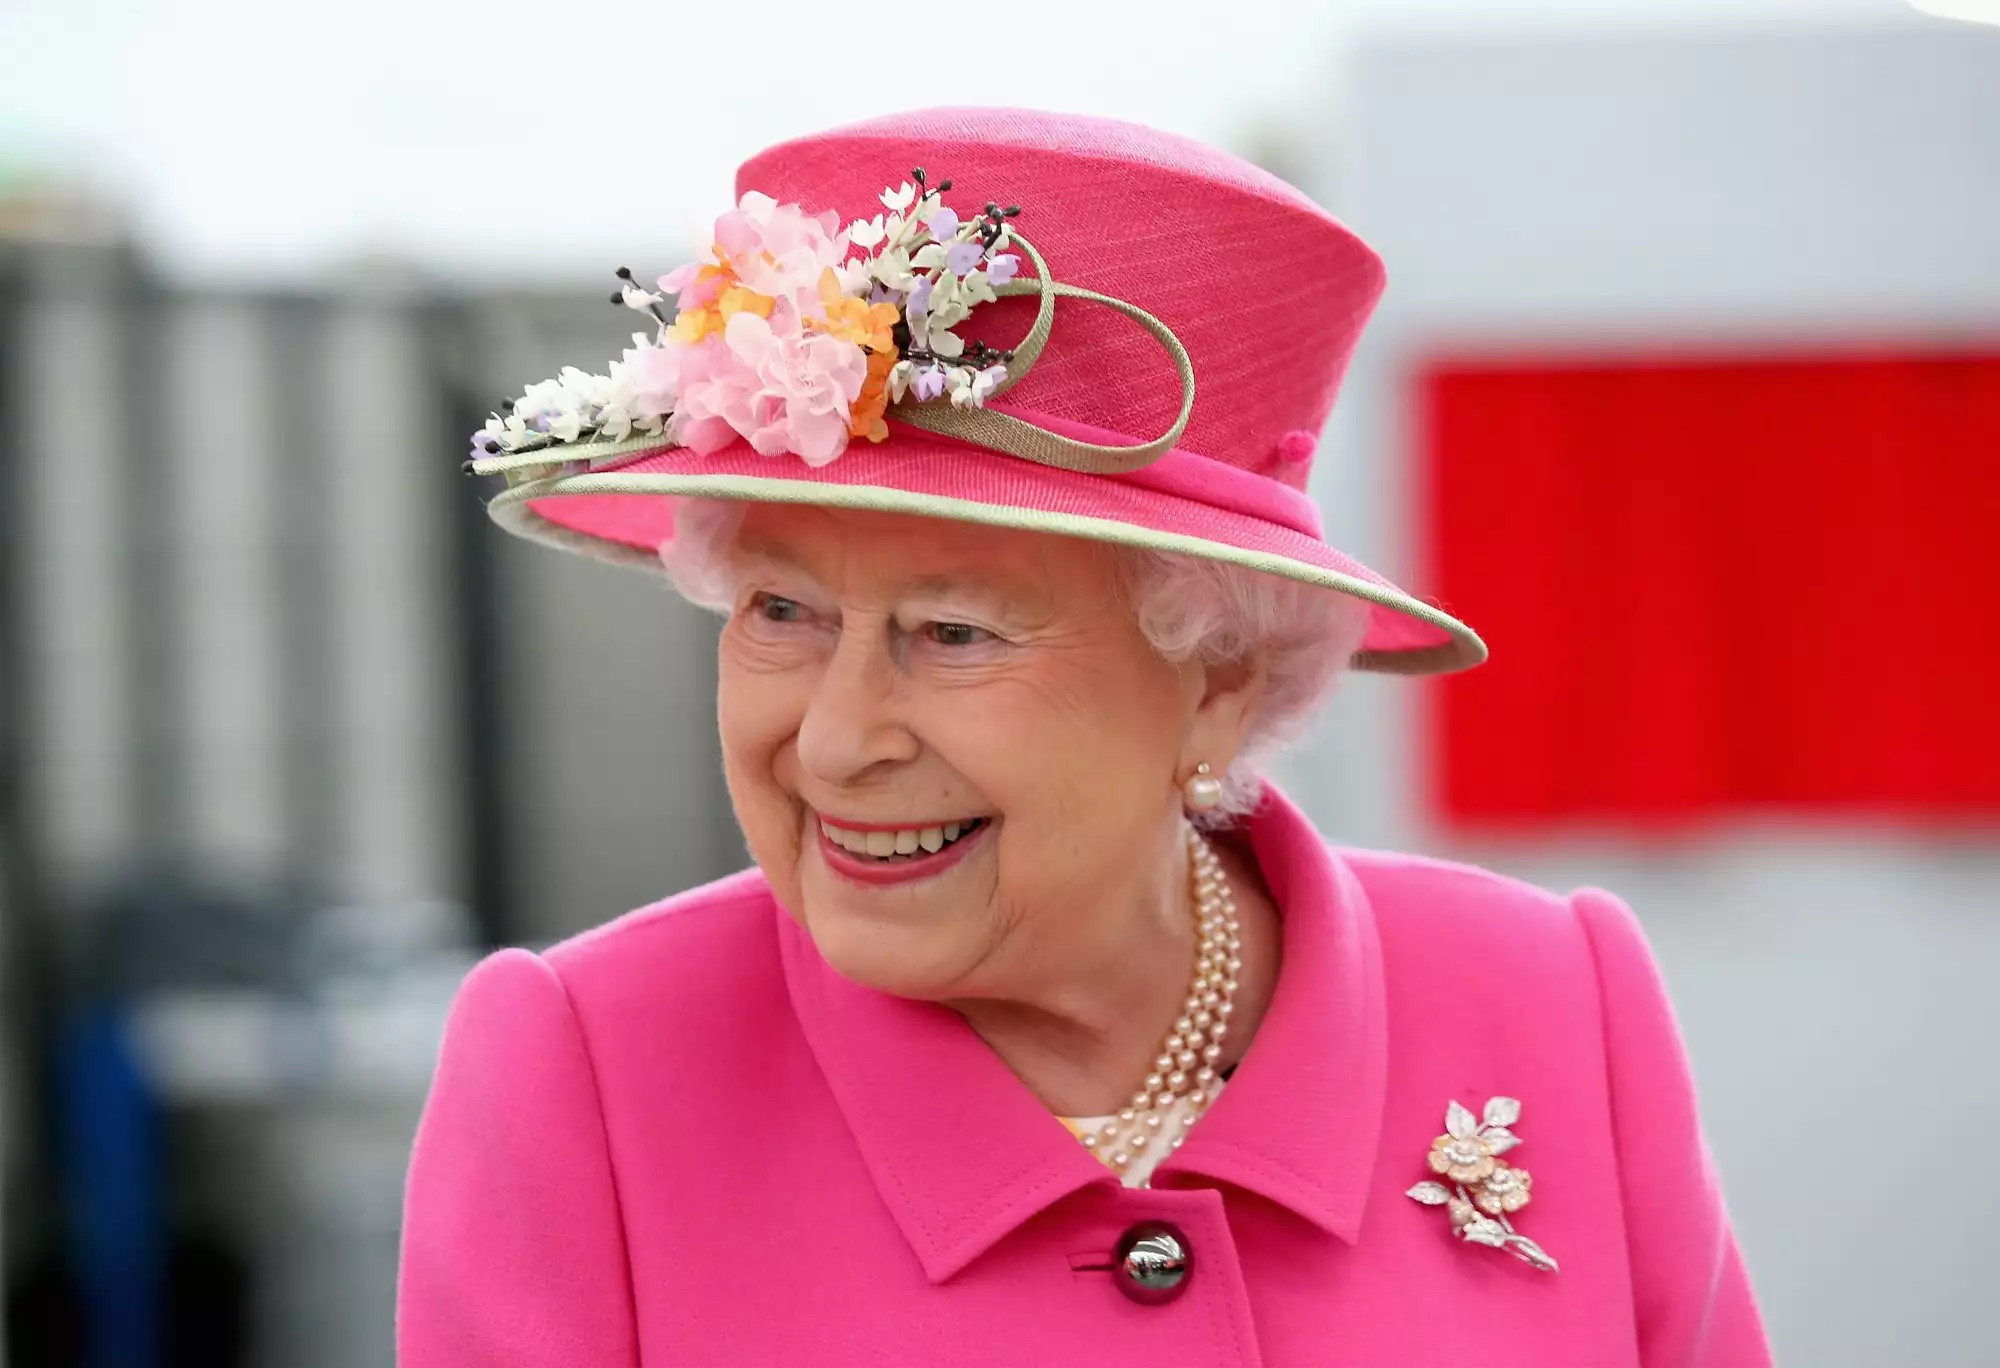 Disebut Bekas Mendiang Ratu Elizabeth Ii, Kantong Teh Celup Dijual Senilai Rp178 Juta